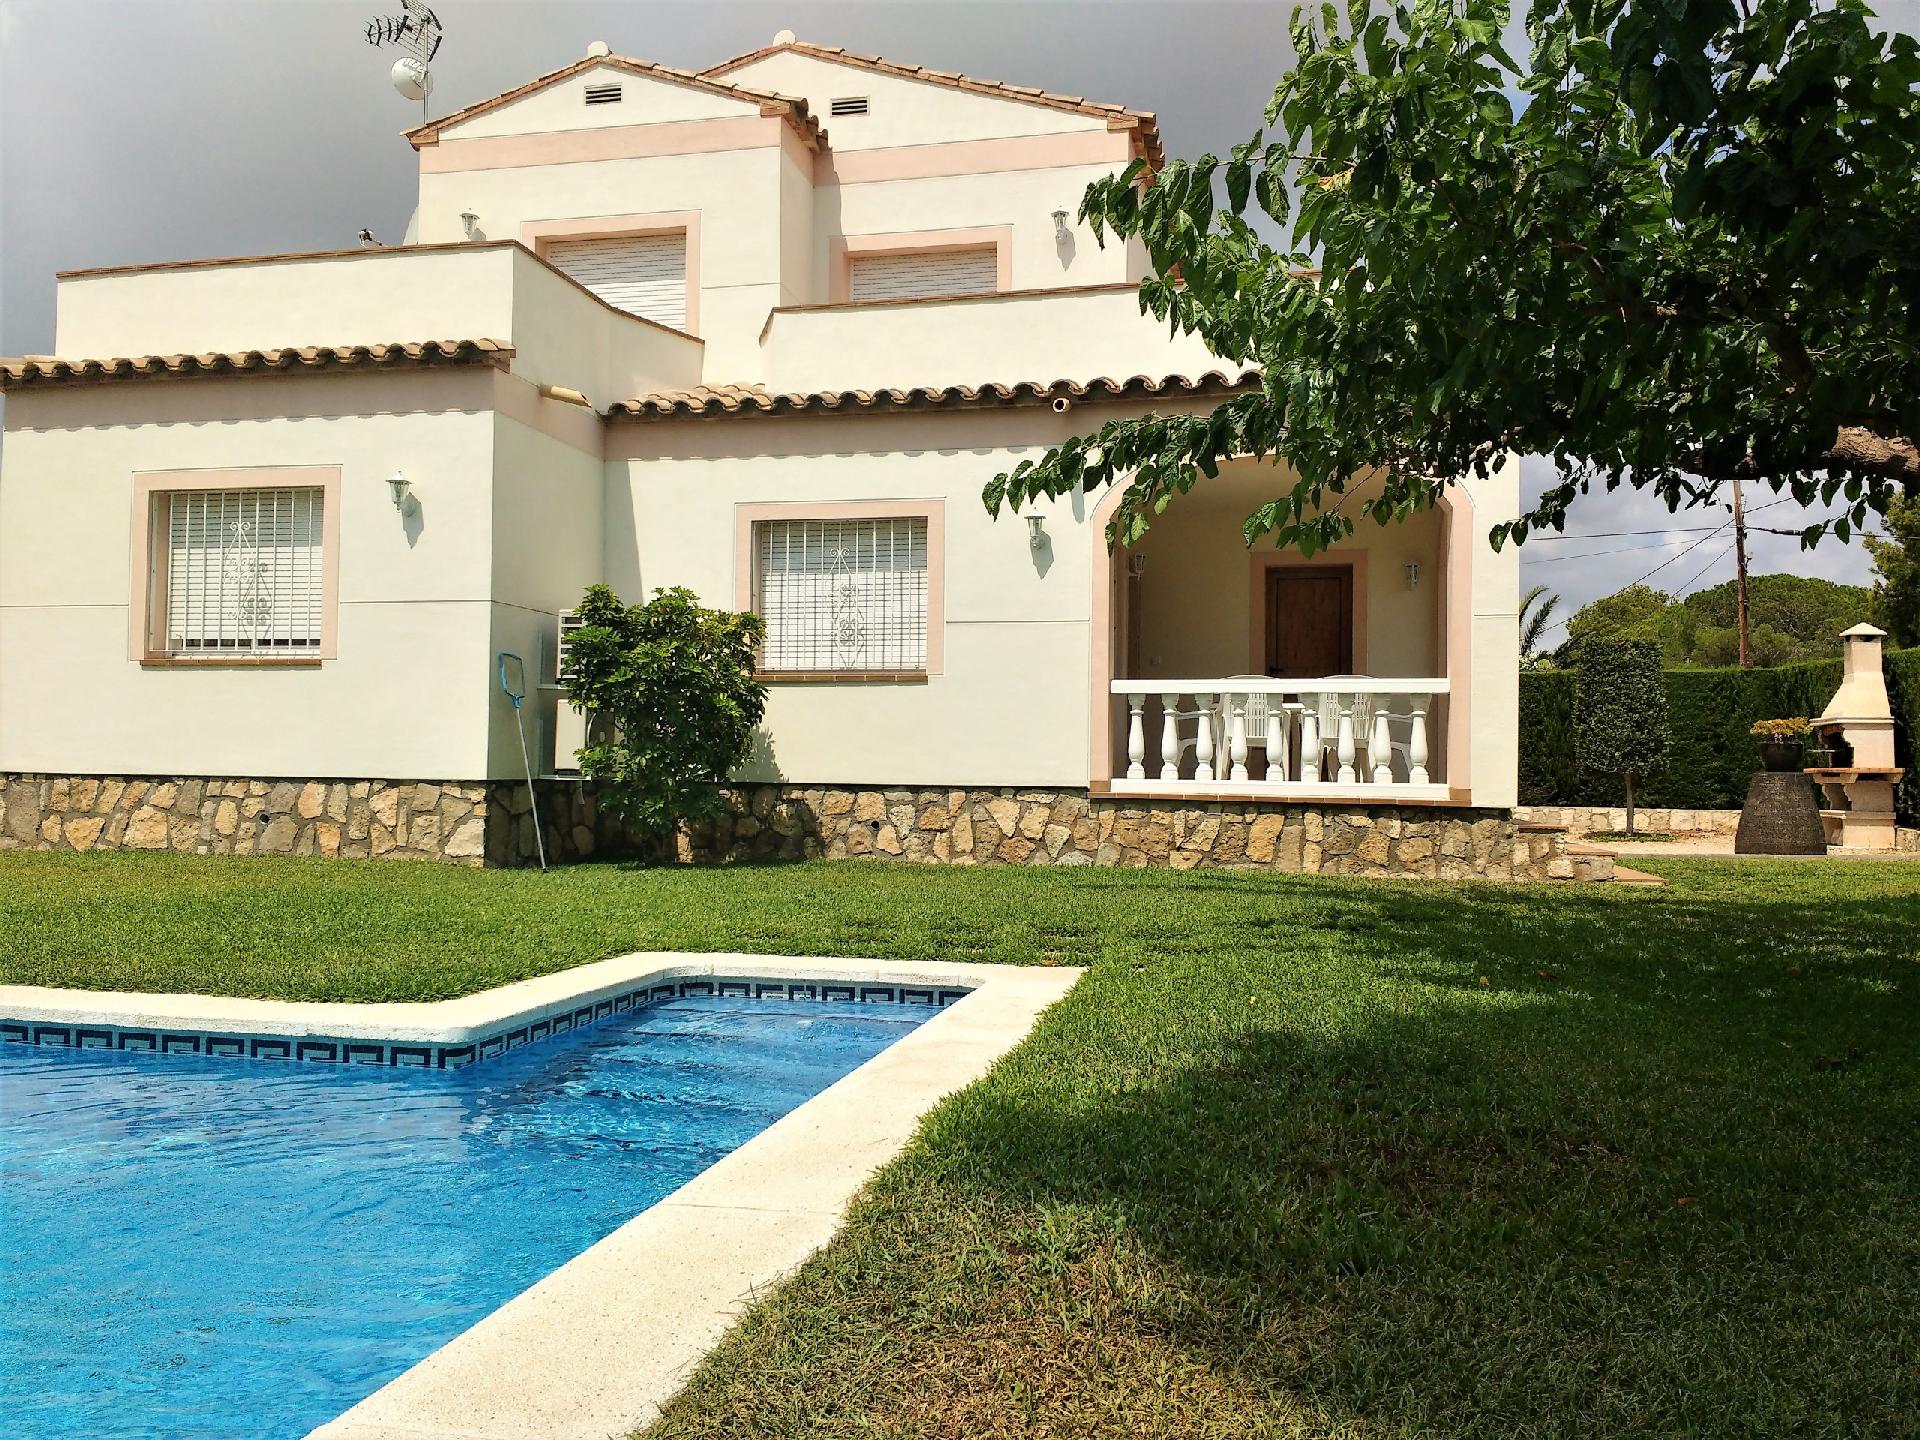 Ferienhaus mit Privatpool für 8 Personen ca 130 m² in Les Tres Cales Costa Dorada